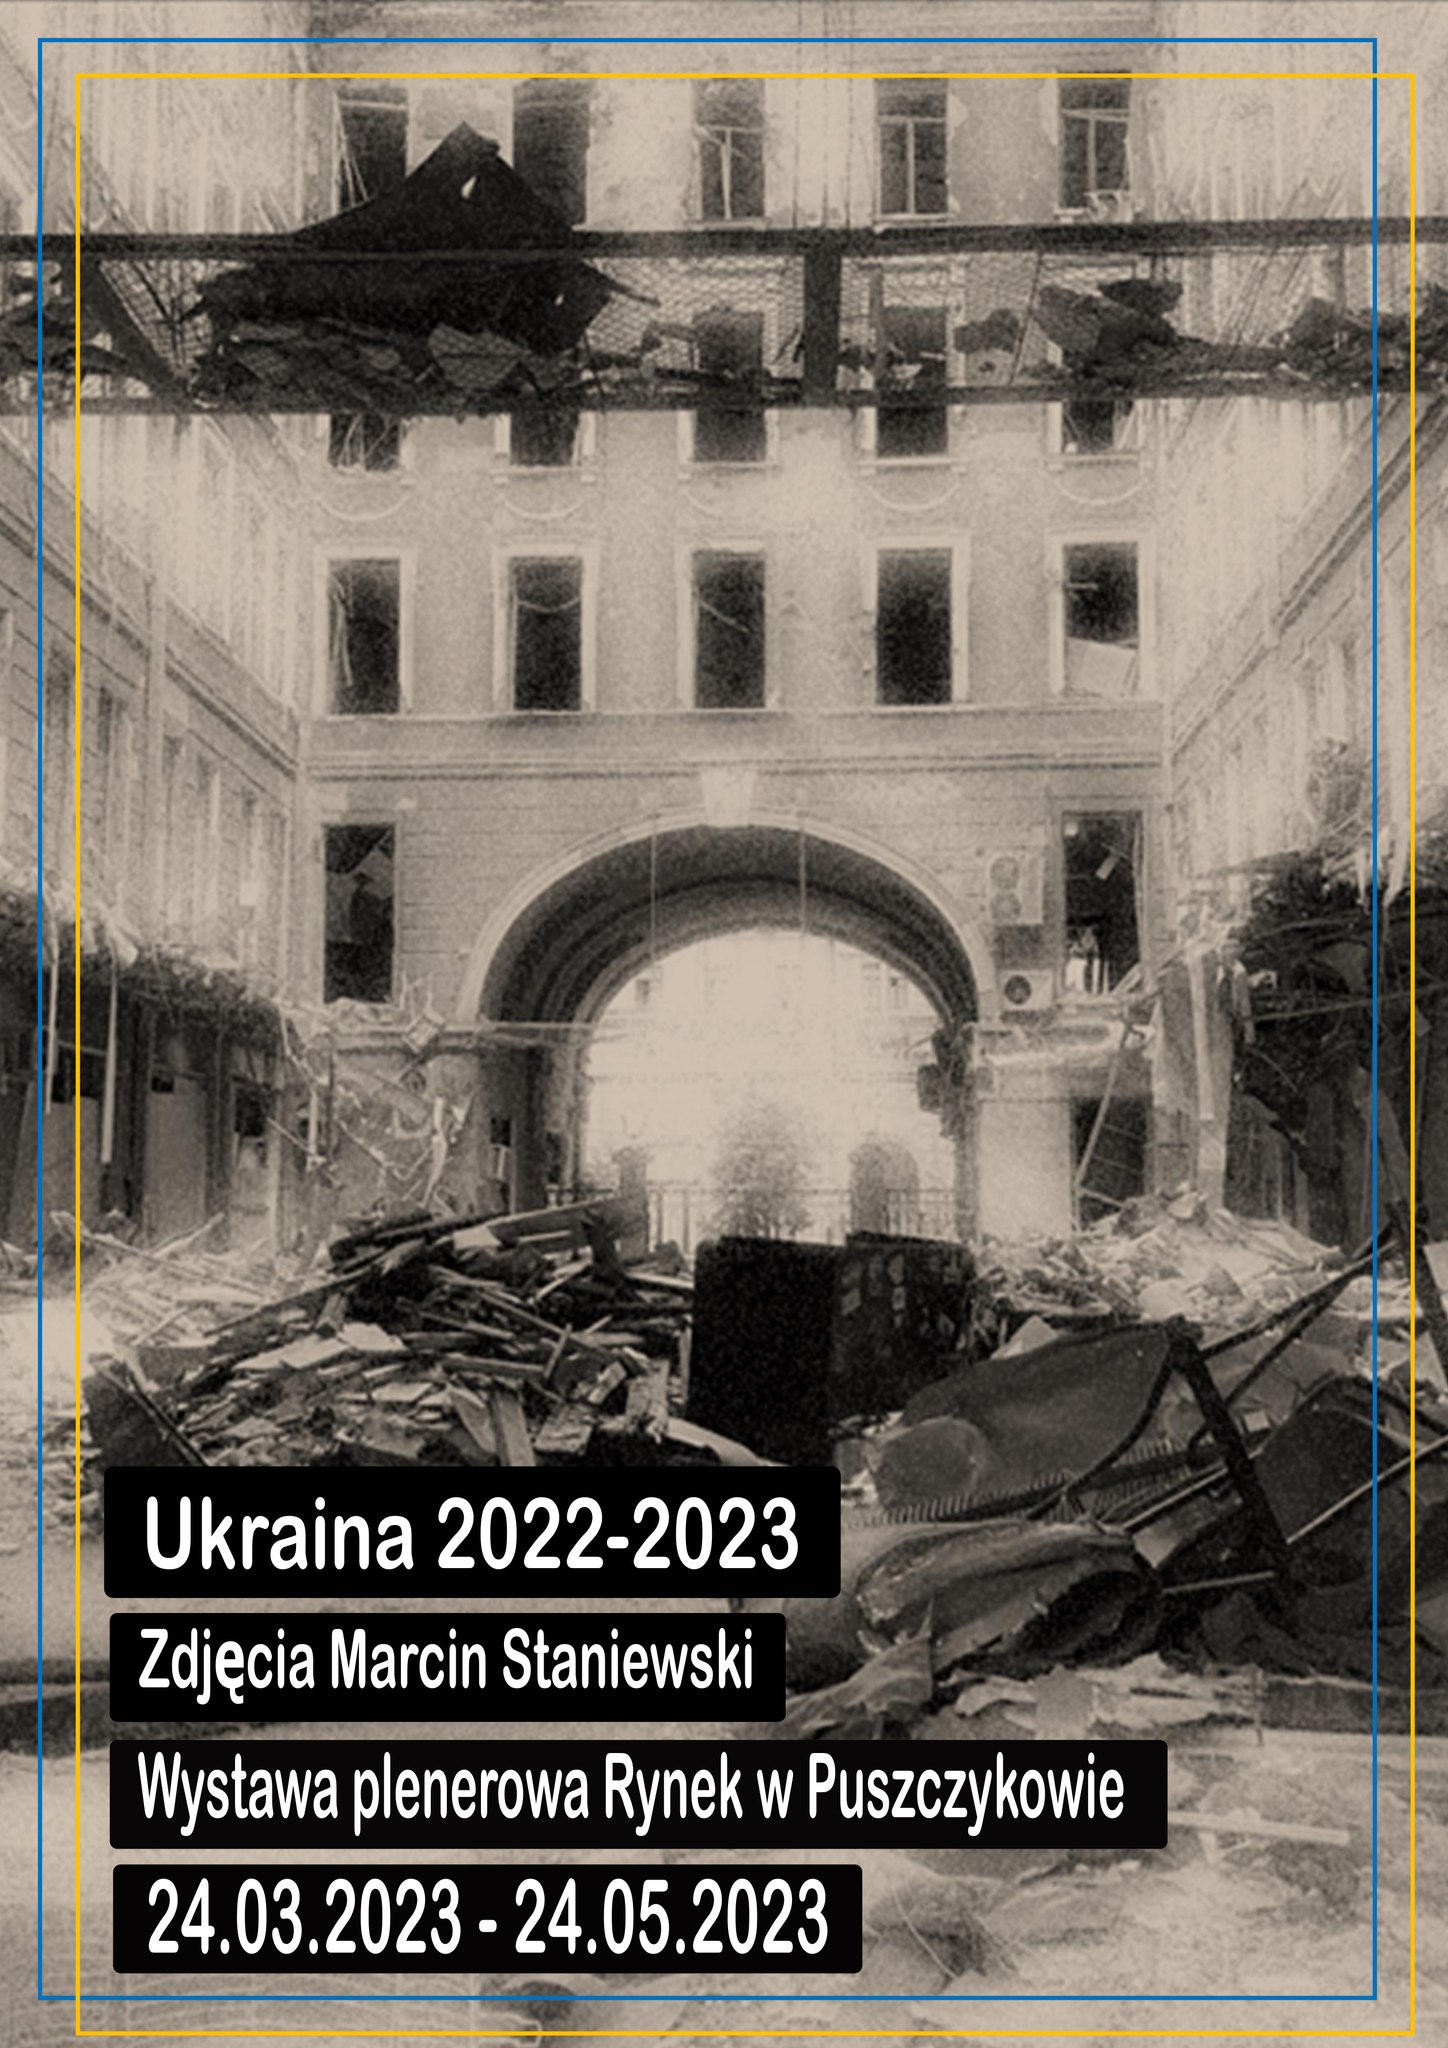 Zapraszamy na wystawę zdjęć „Ukraina 2022-2023”. Autorem fotografii jest Marcin Staniewski - wolontariusz jeżdżący od początku wojny do Ukrainy z pomocą humanitarną.